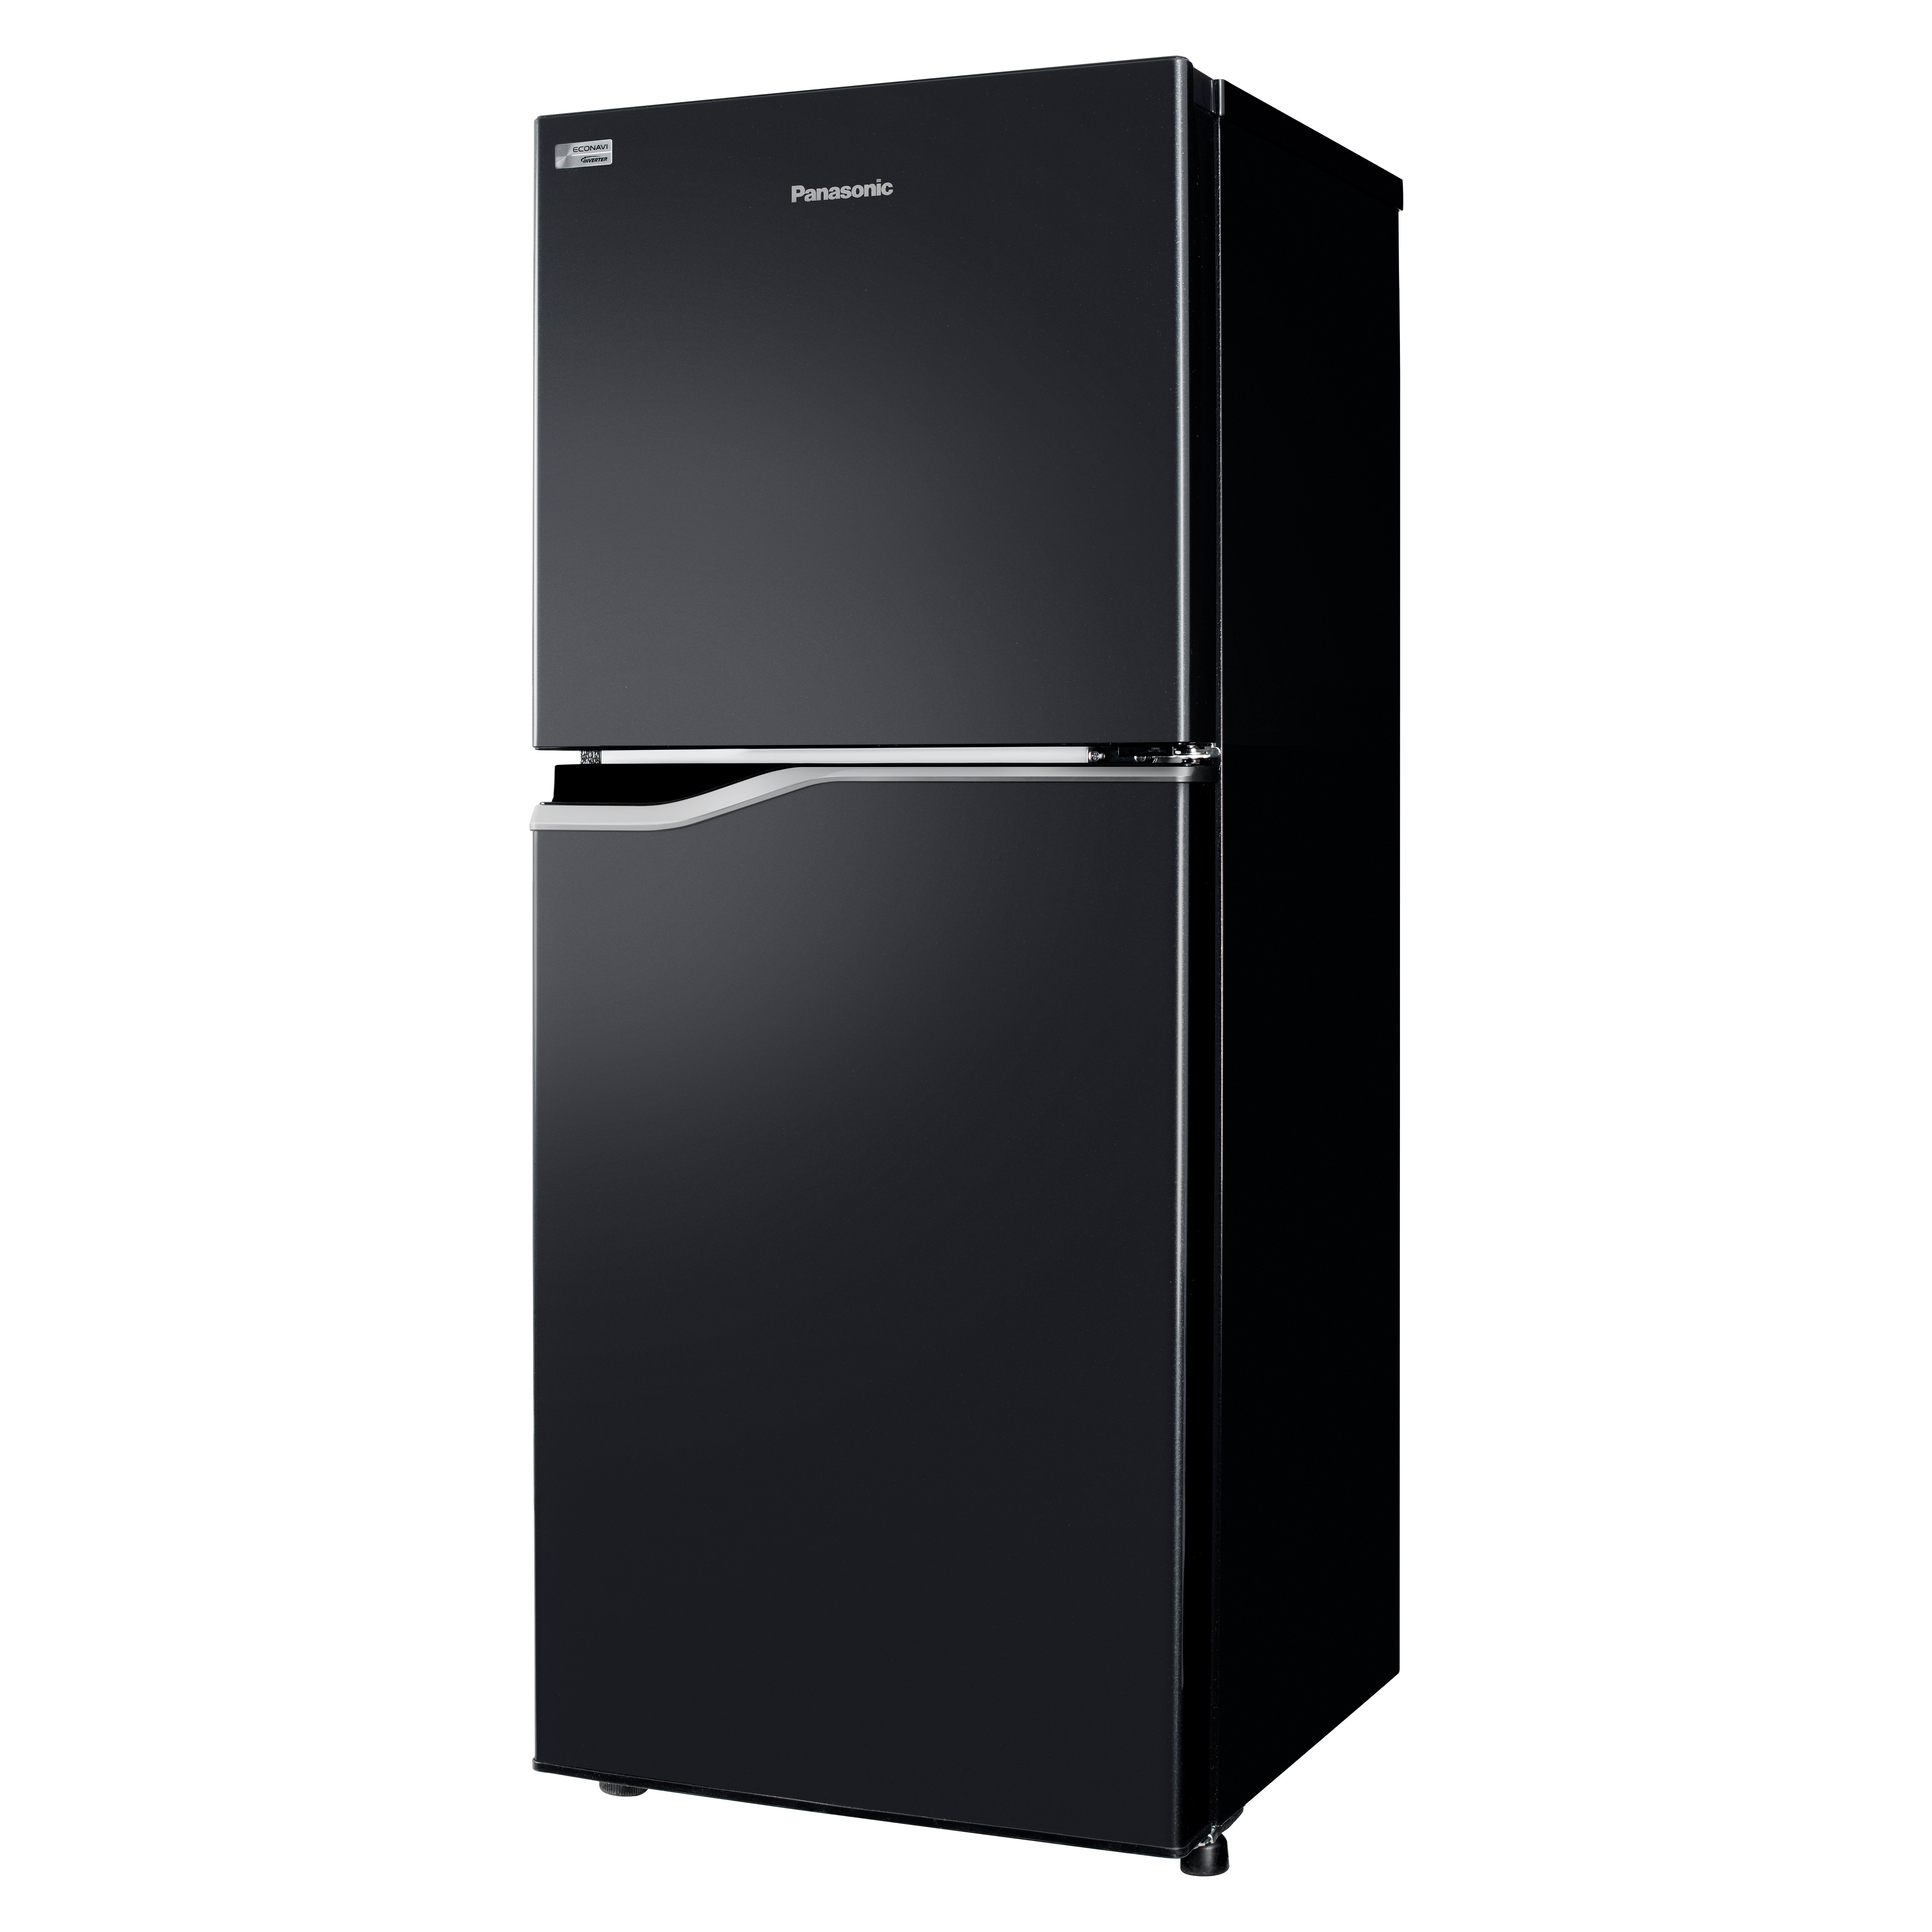 Tủ Lạnh Panasonic 167L Inverter NR-BA189PKVN - Kháng khuẩn AG Clean - Hàng chính hãng